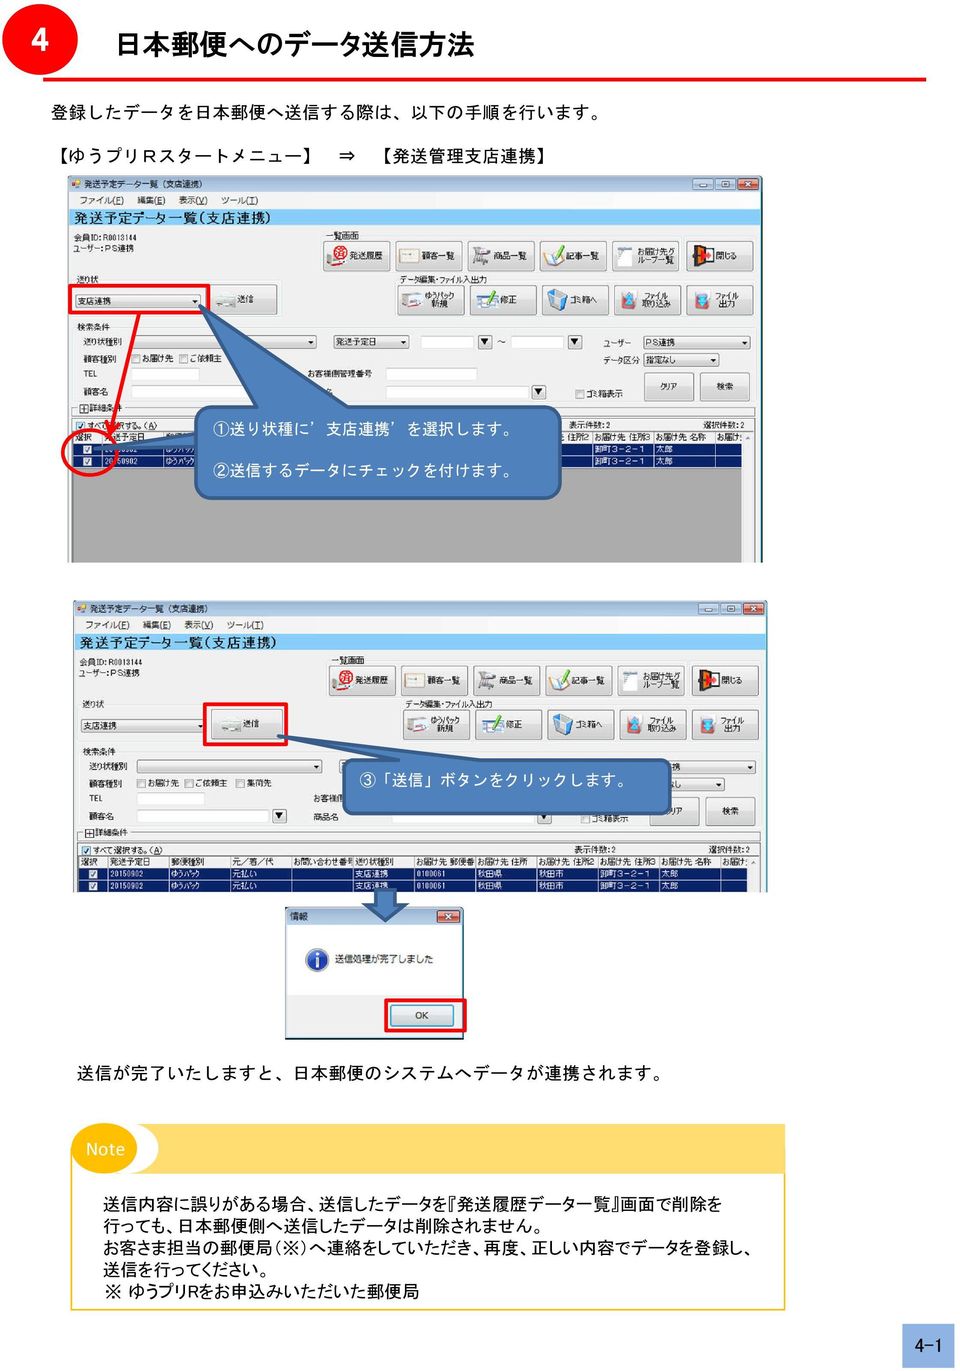 されます Note 送 信 内 容 に 誤 りがある 場 合 送 信 したデータを 発 送 履 歴 データ 一 覧 画 面 で 削 除 を 行 っても 日 本 郵 便 側 へ 送 信 したデータは 削 除